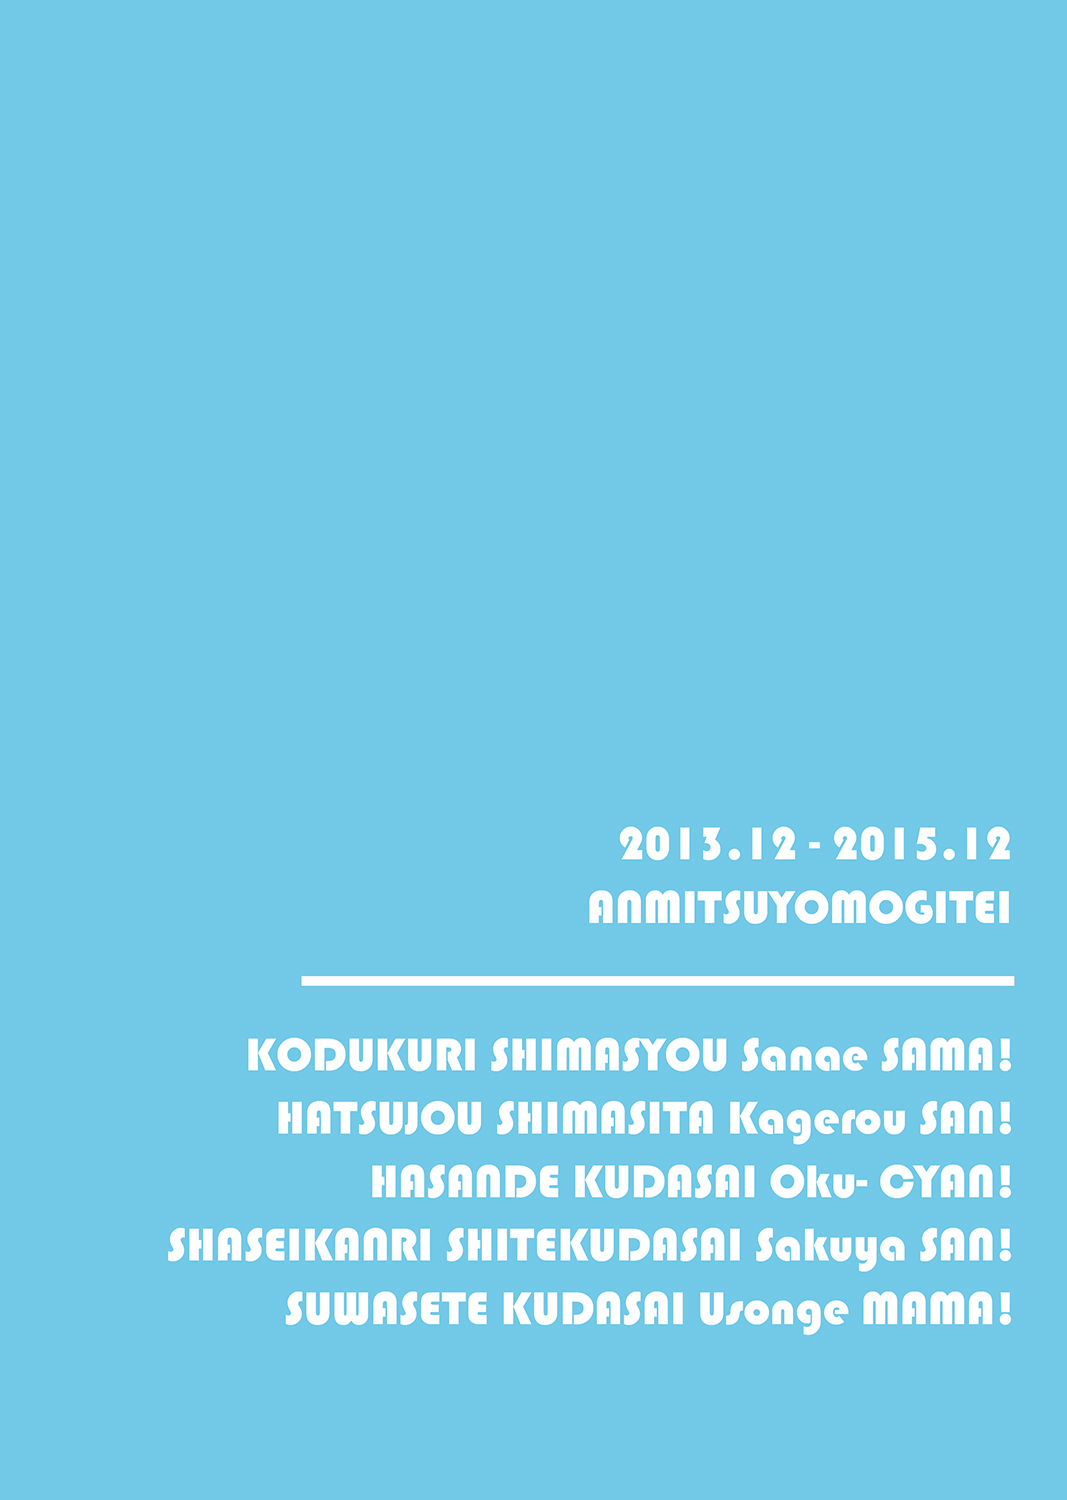 [あんみつよもぎ亭 (みちきんぐ)] ANMITSU TOUHOU HISTORY Vol.2 (東方Project) [DL版]